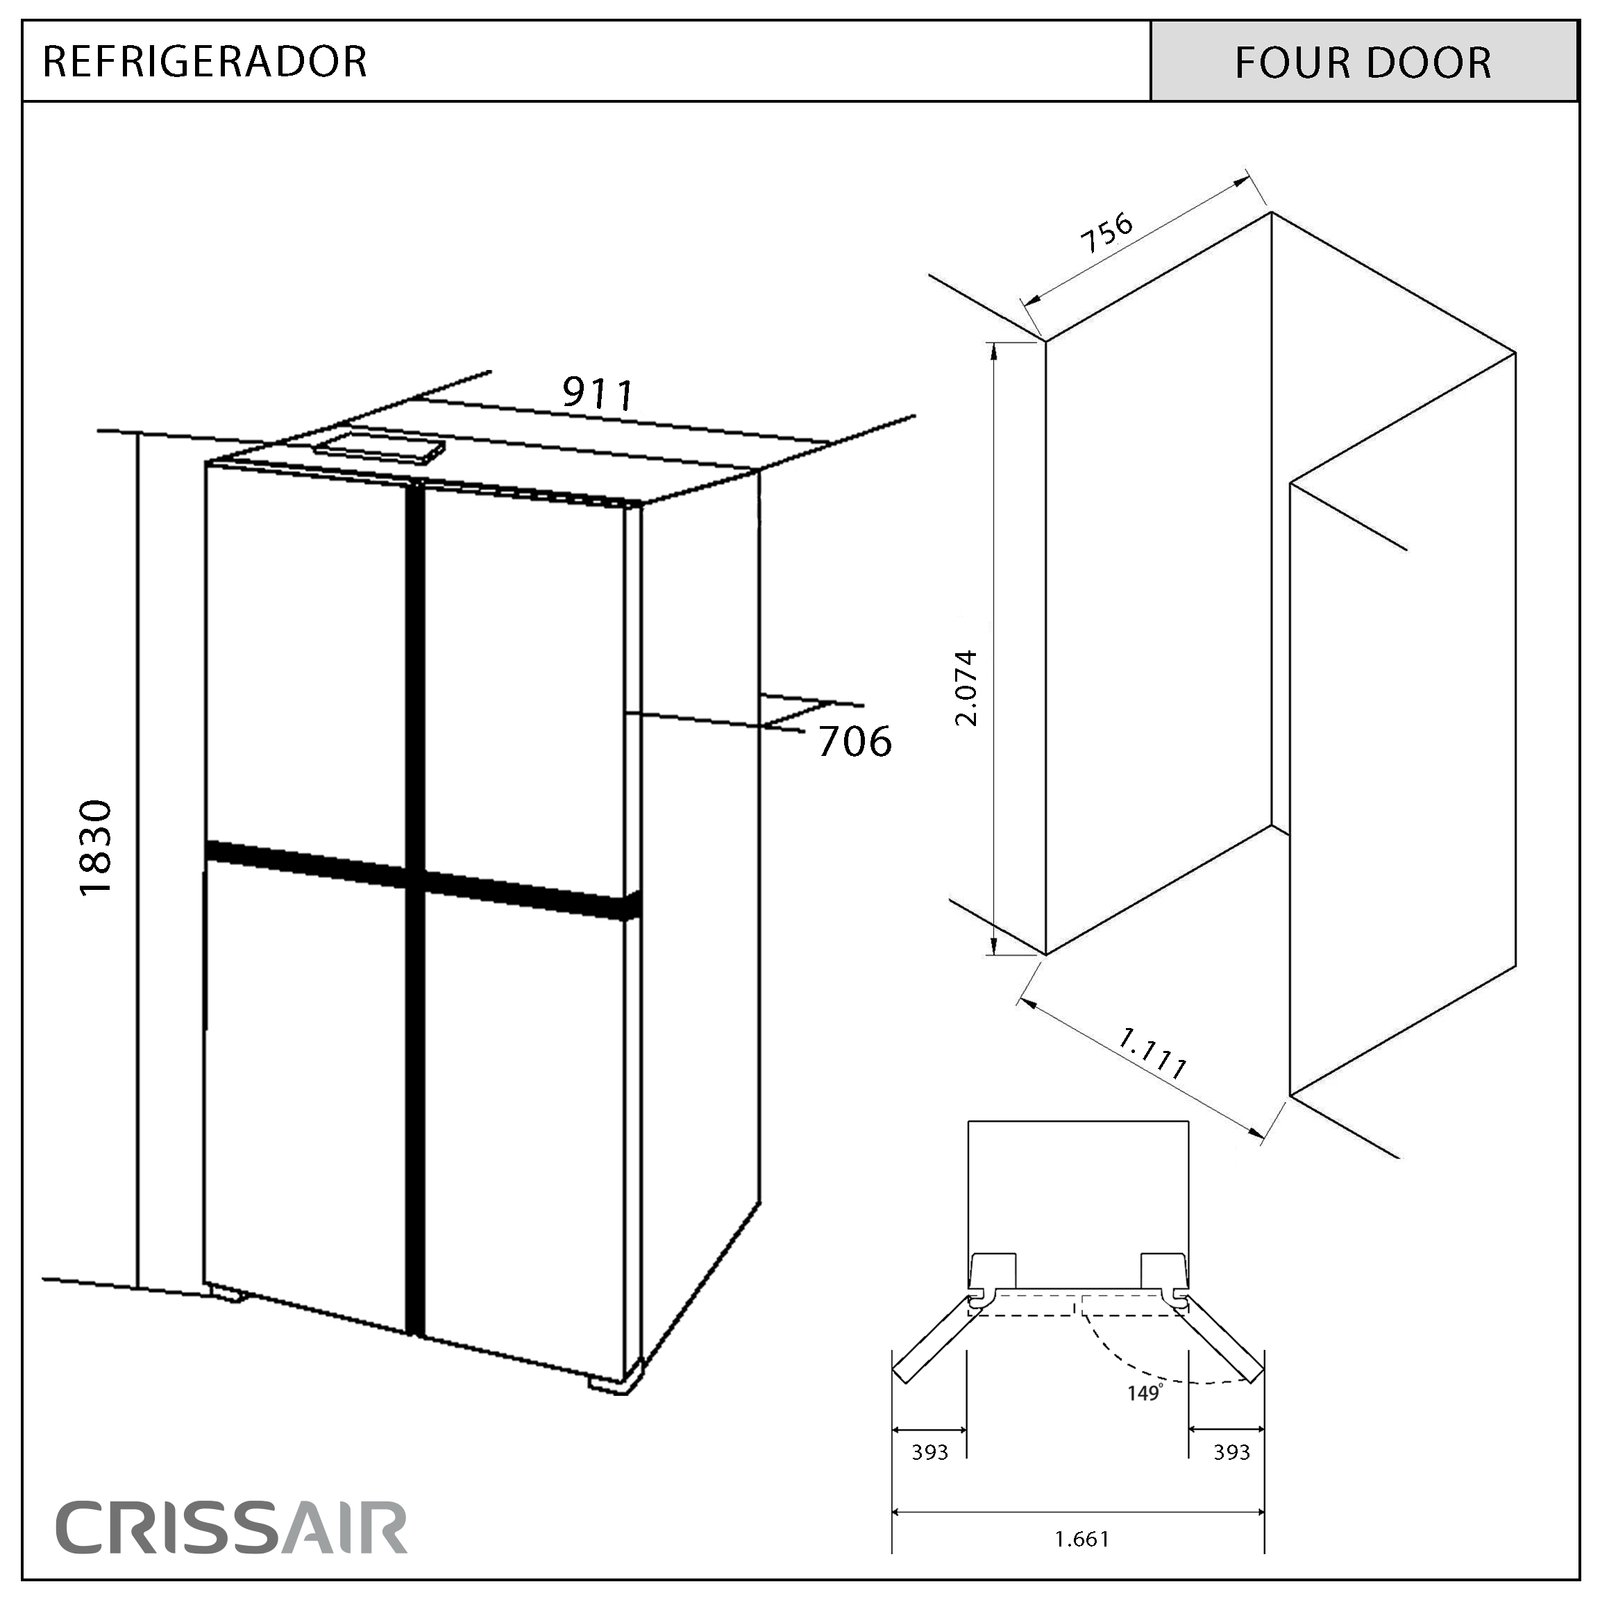 REFRIGERADOR FOUR DOOR - RFD 540